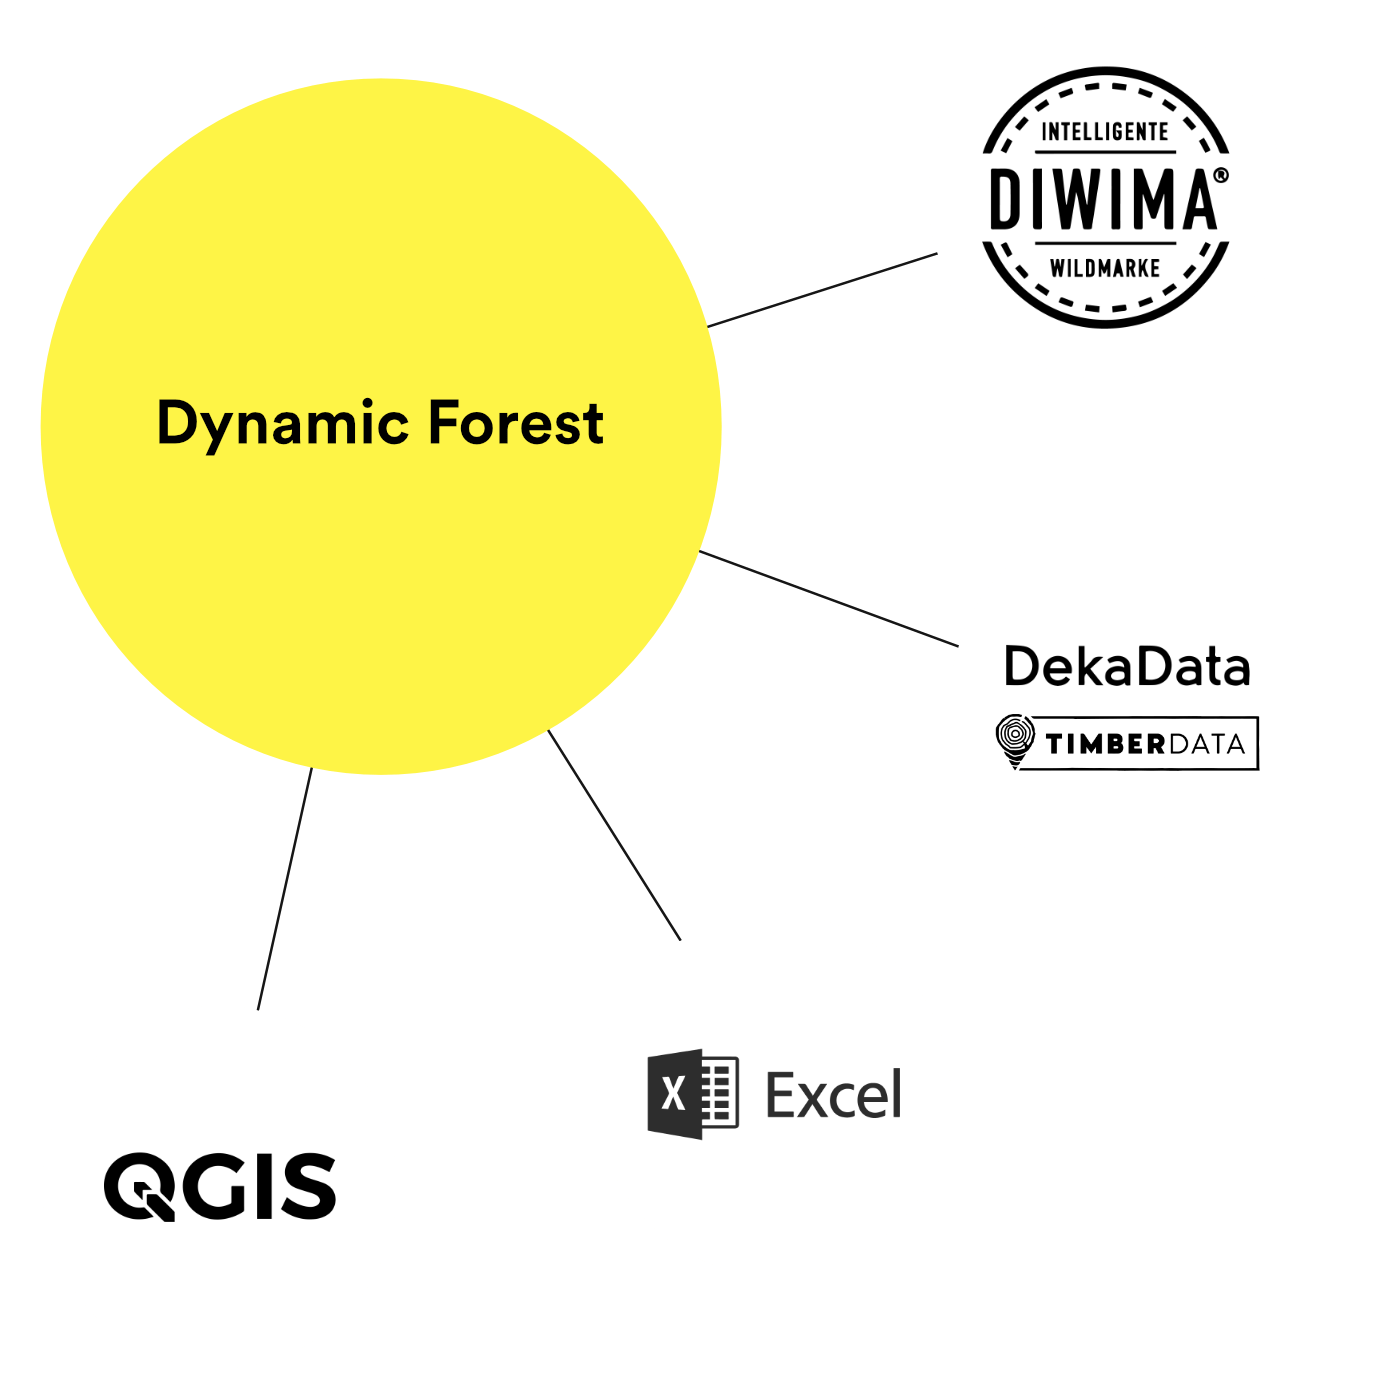 Grafik mit dem Netzwerk von Dynamic Forest: Diwima Intelligente Wildmarke, DekaData Timberdata, Excel und QGis